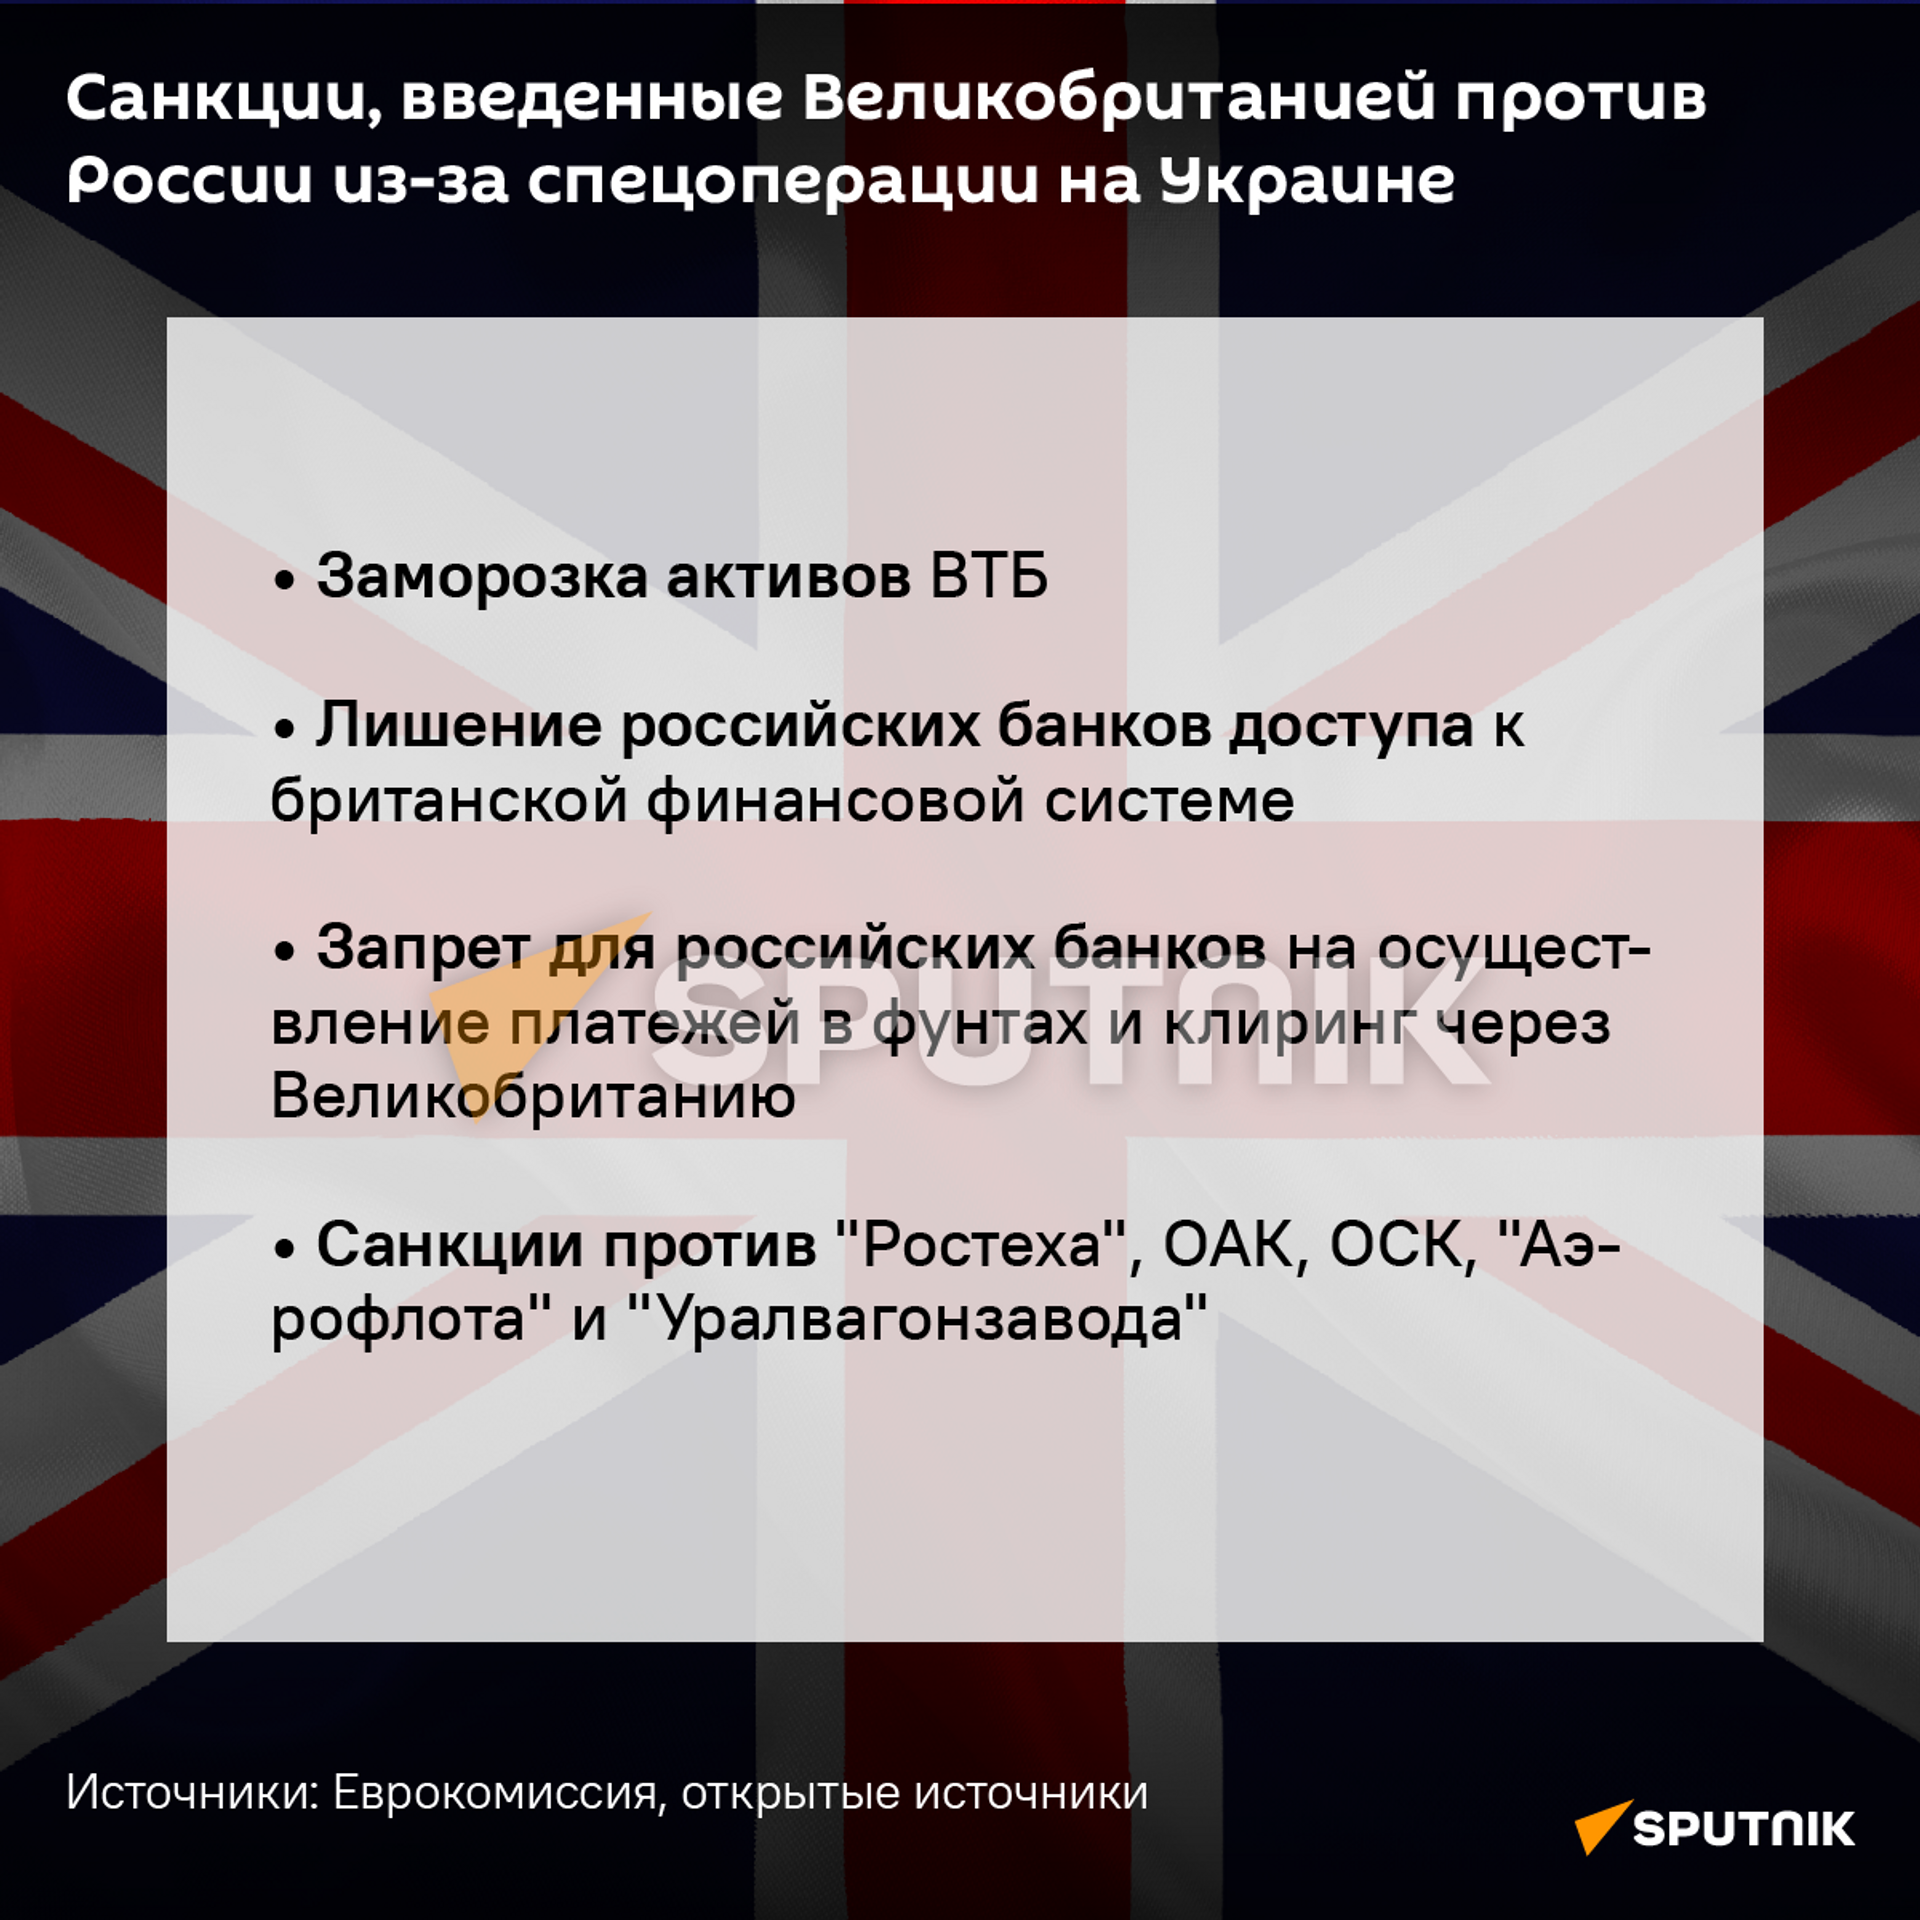 Санкции Великобритании против России из-за спецоперации на Украине - Sputnik Казахстан, 1920, 26.02.2022